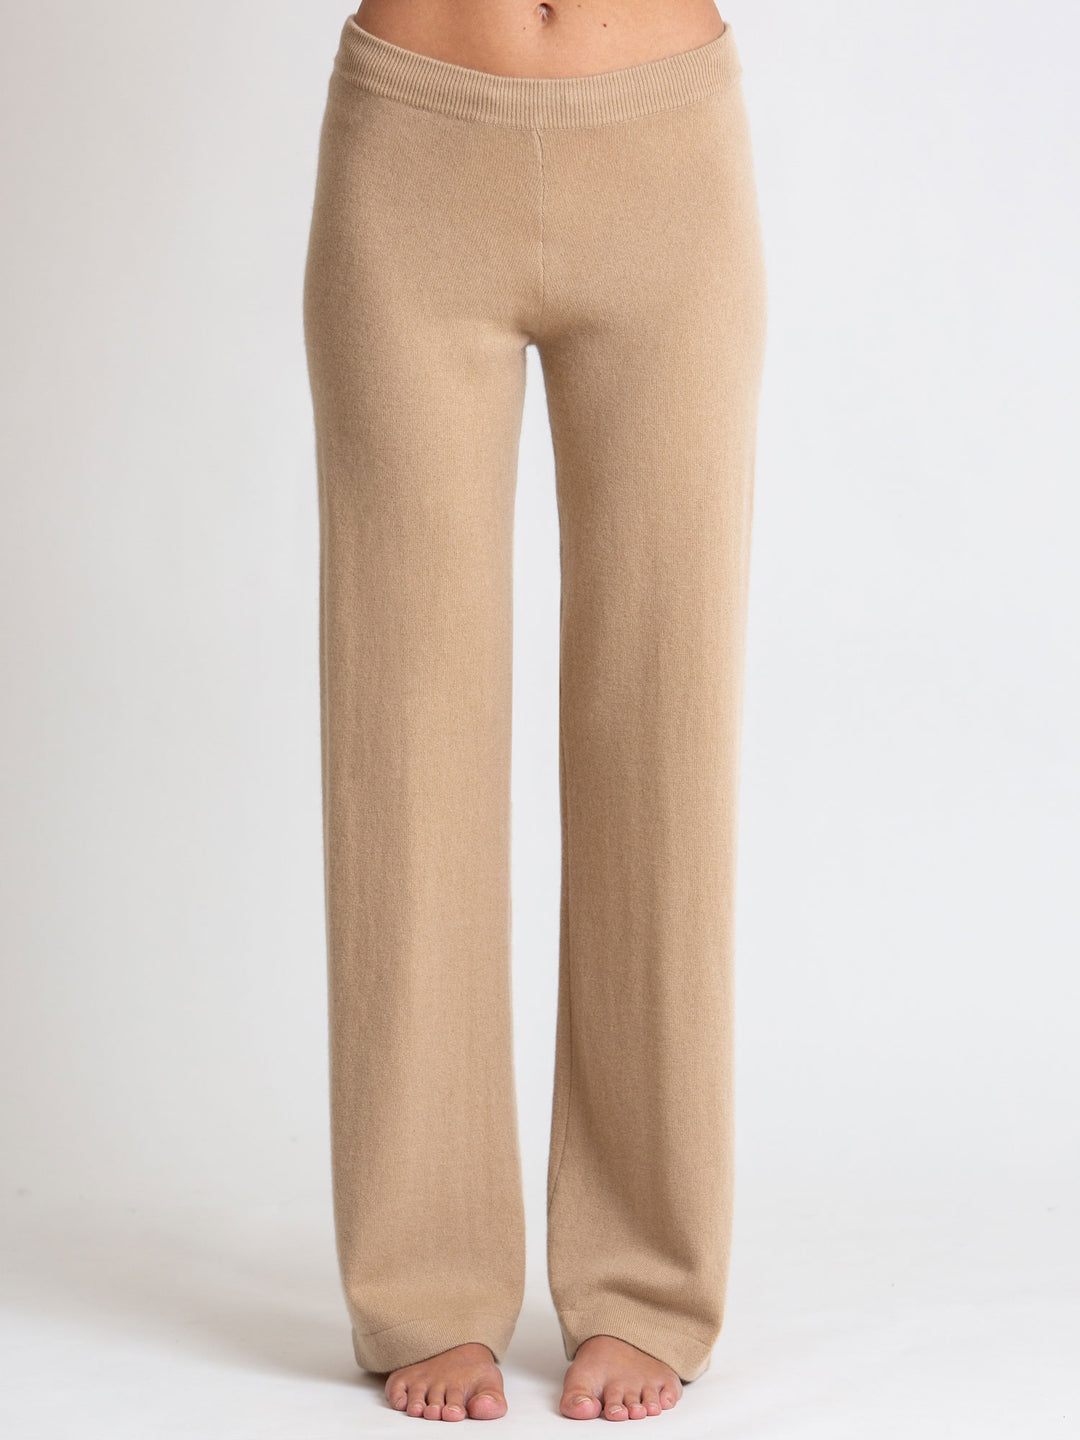 $380 NWT Tahari 100% Cashmere knit Jogger pants lounge Pants women